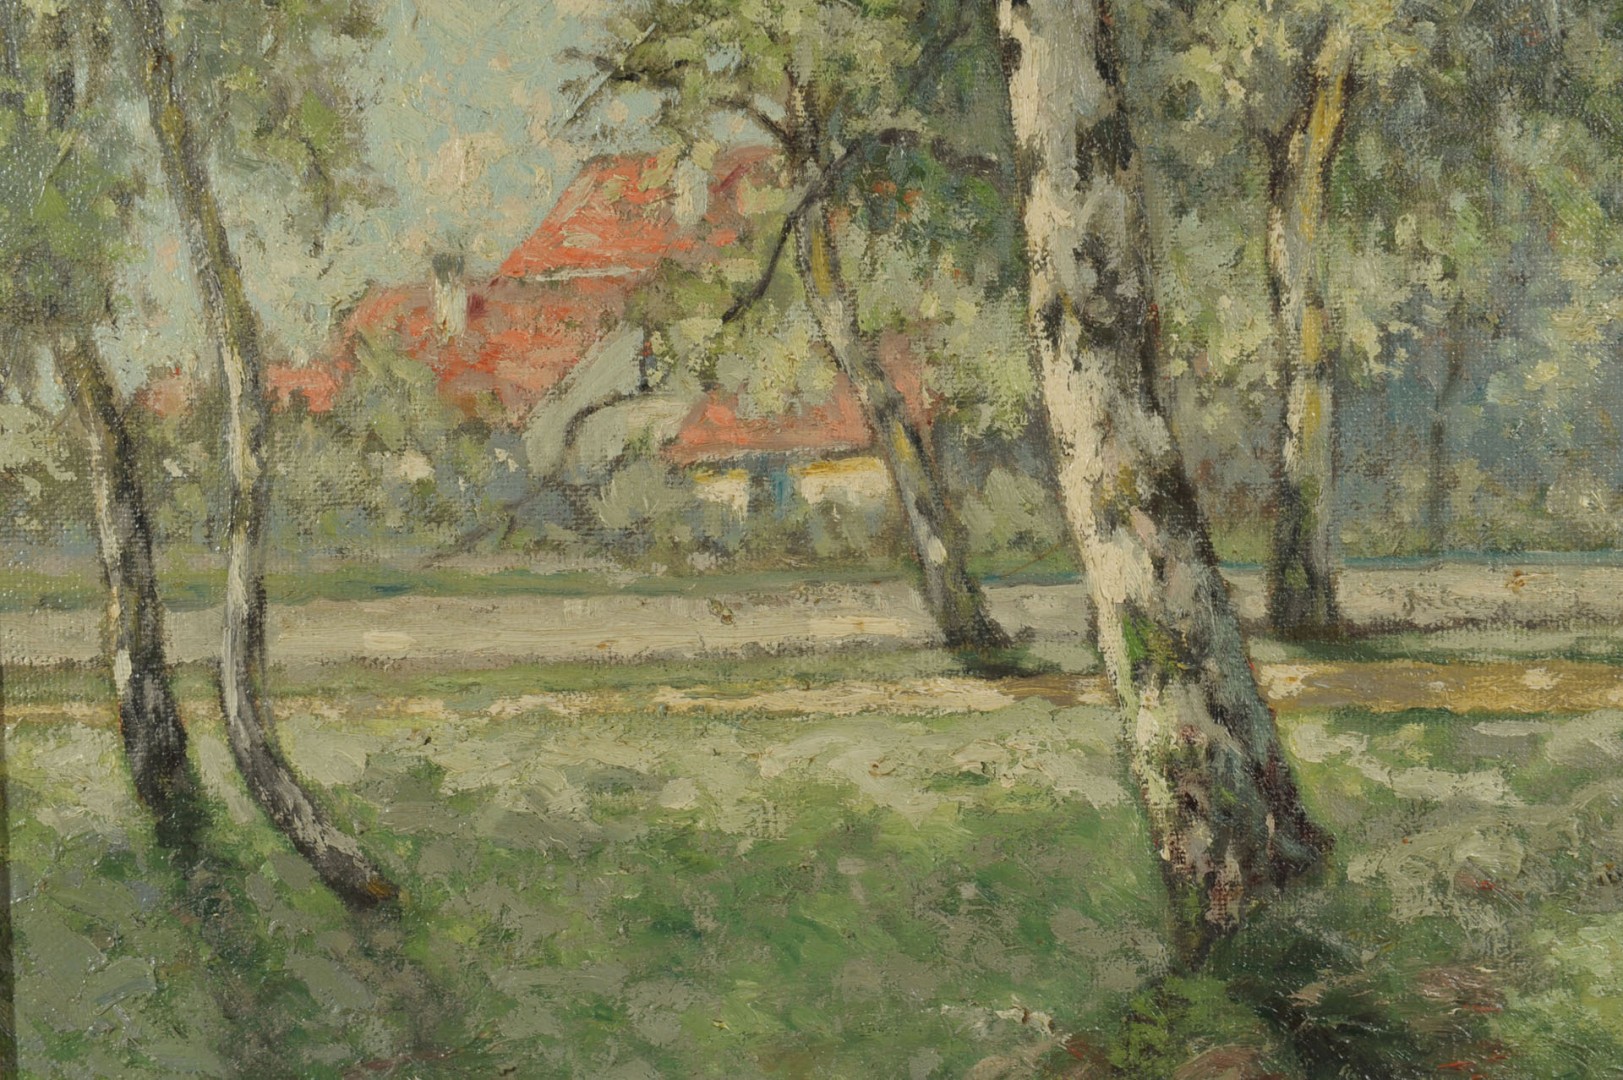 Lot 192: William Clusmann Impressionist Landscape Painting